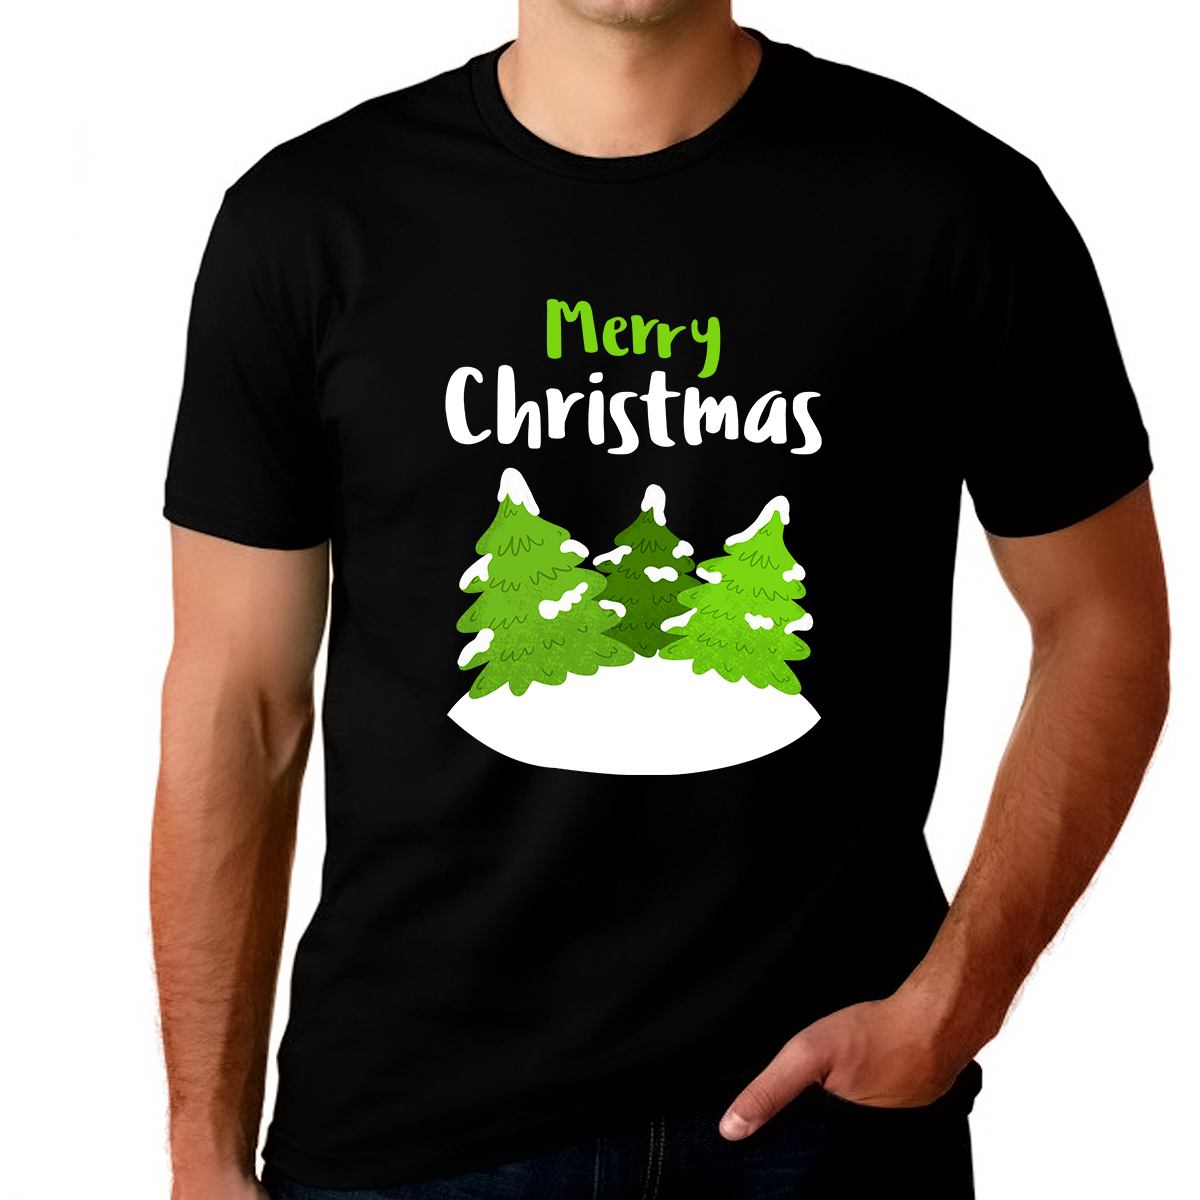 Funny Mens Christmas Pajamas Christmas Shirt Christmas Shirts for Men Plus Size Funny Christmas Shirt